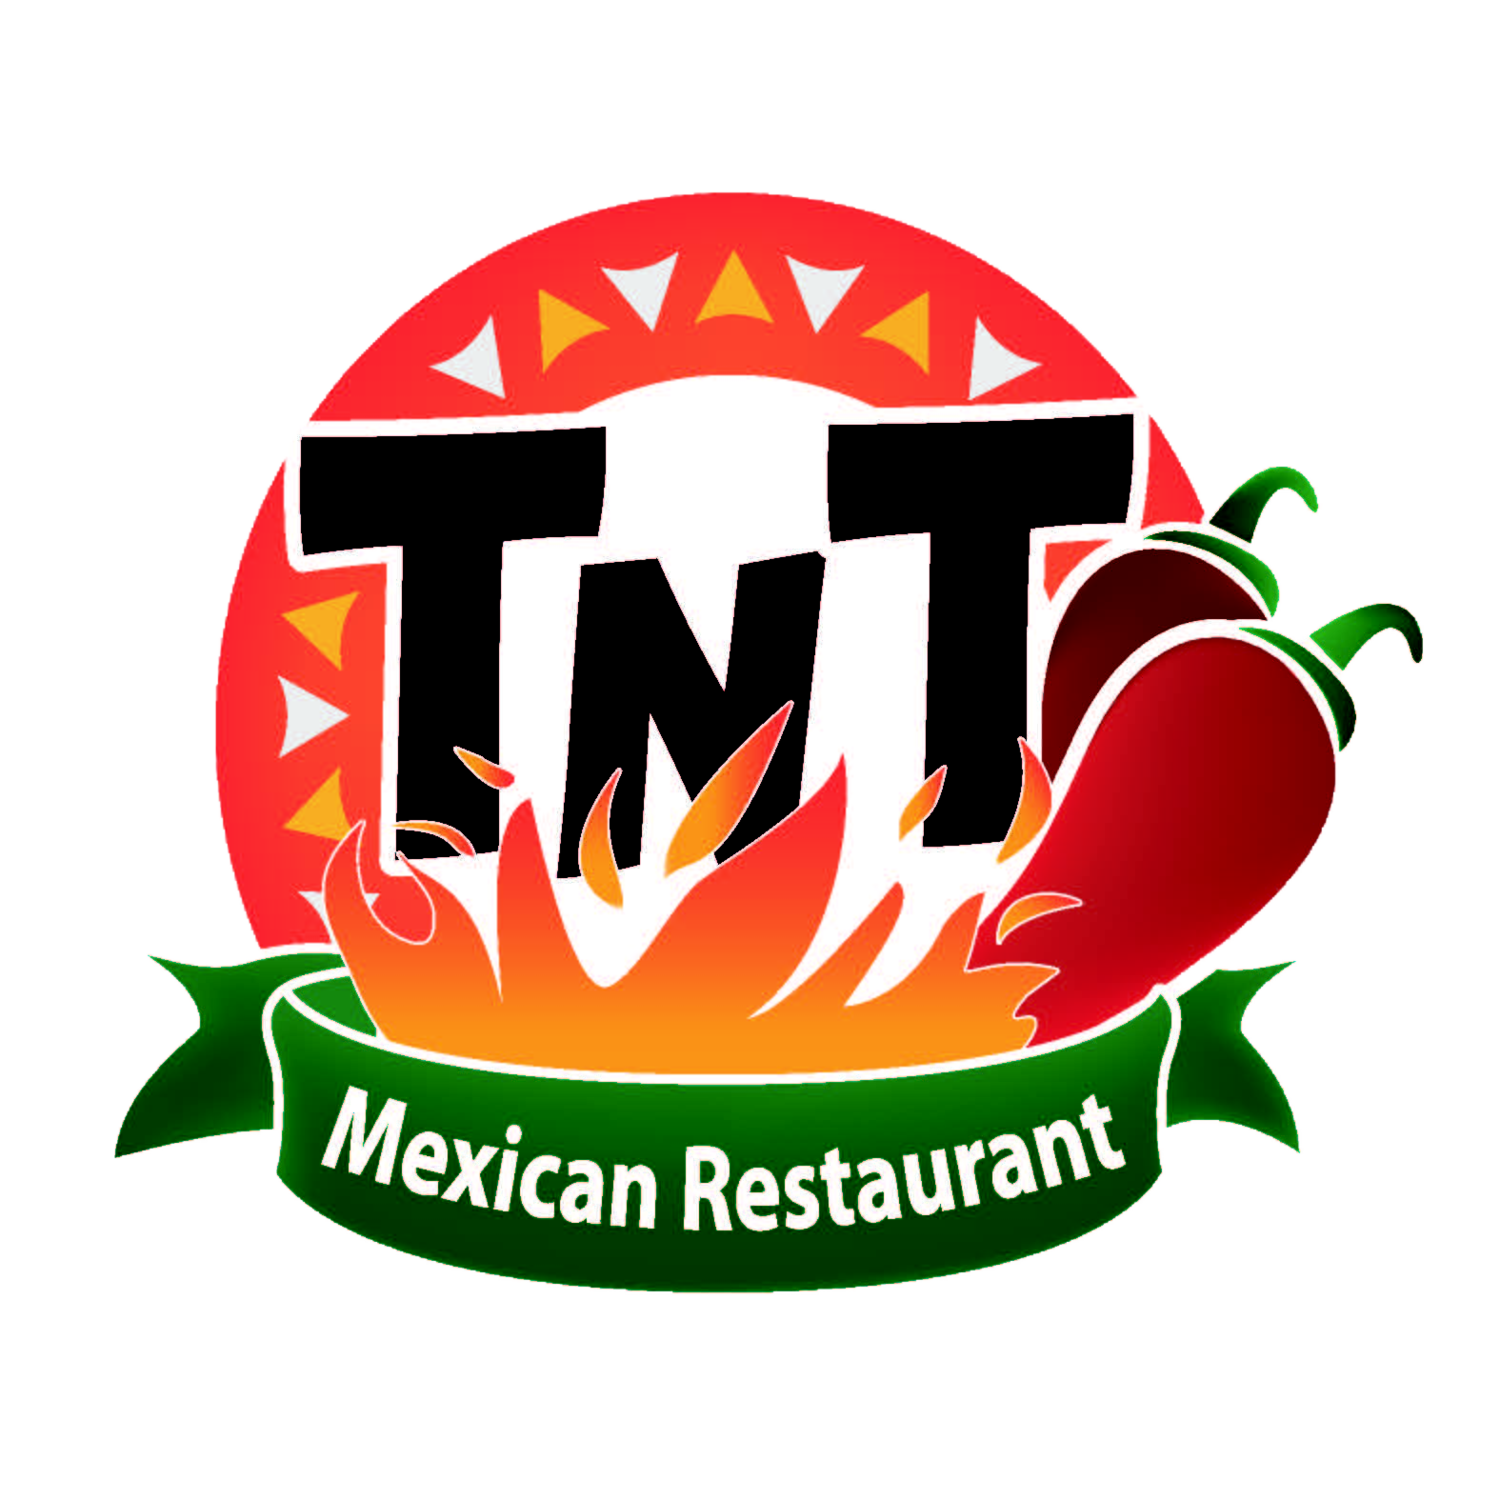 TNT MEXICAN RESTAURANT